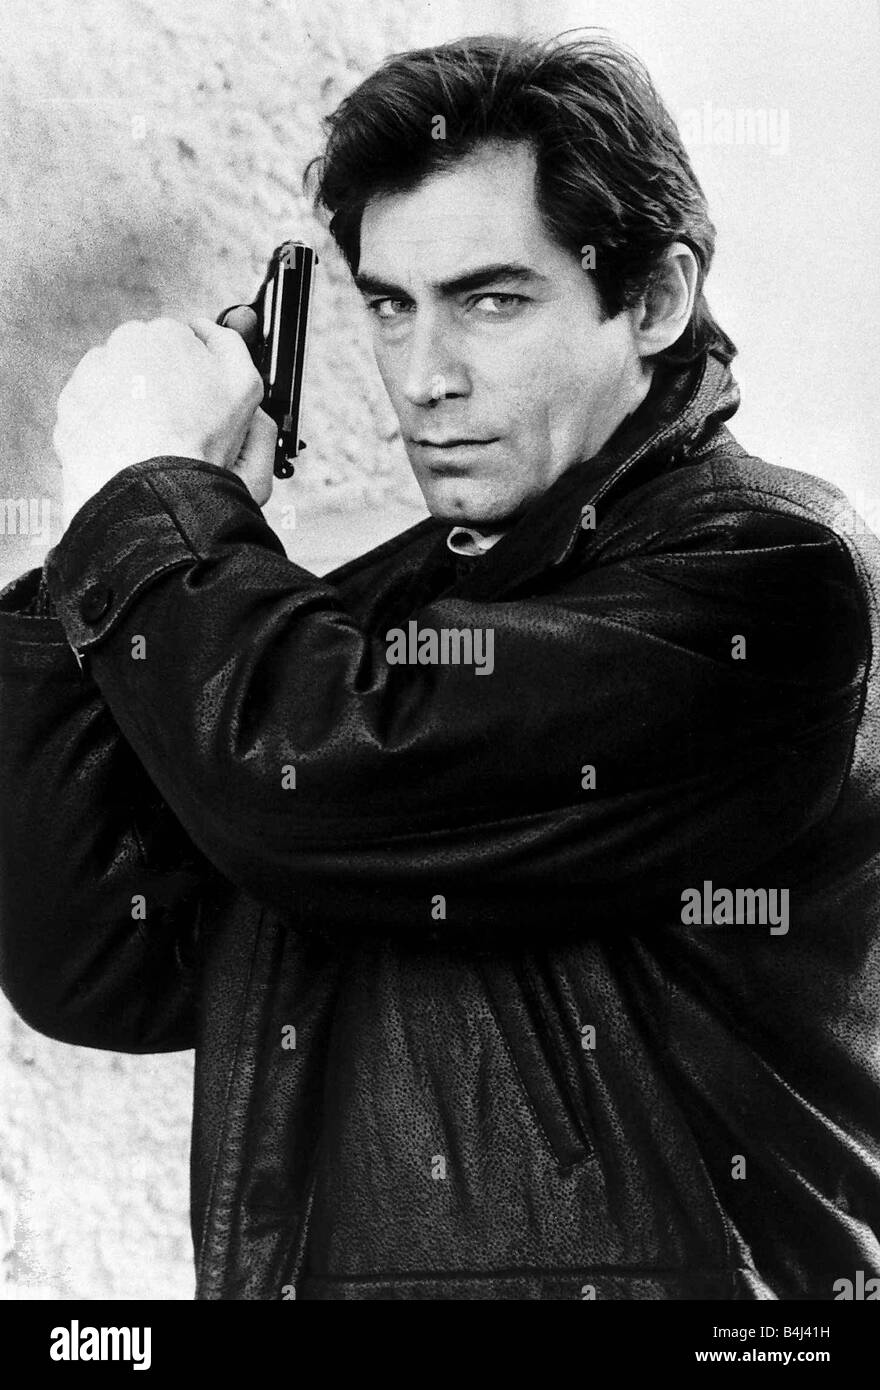 Timothy Dalton actor as Bond July 1988 dbase MSI Stock Photo